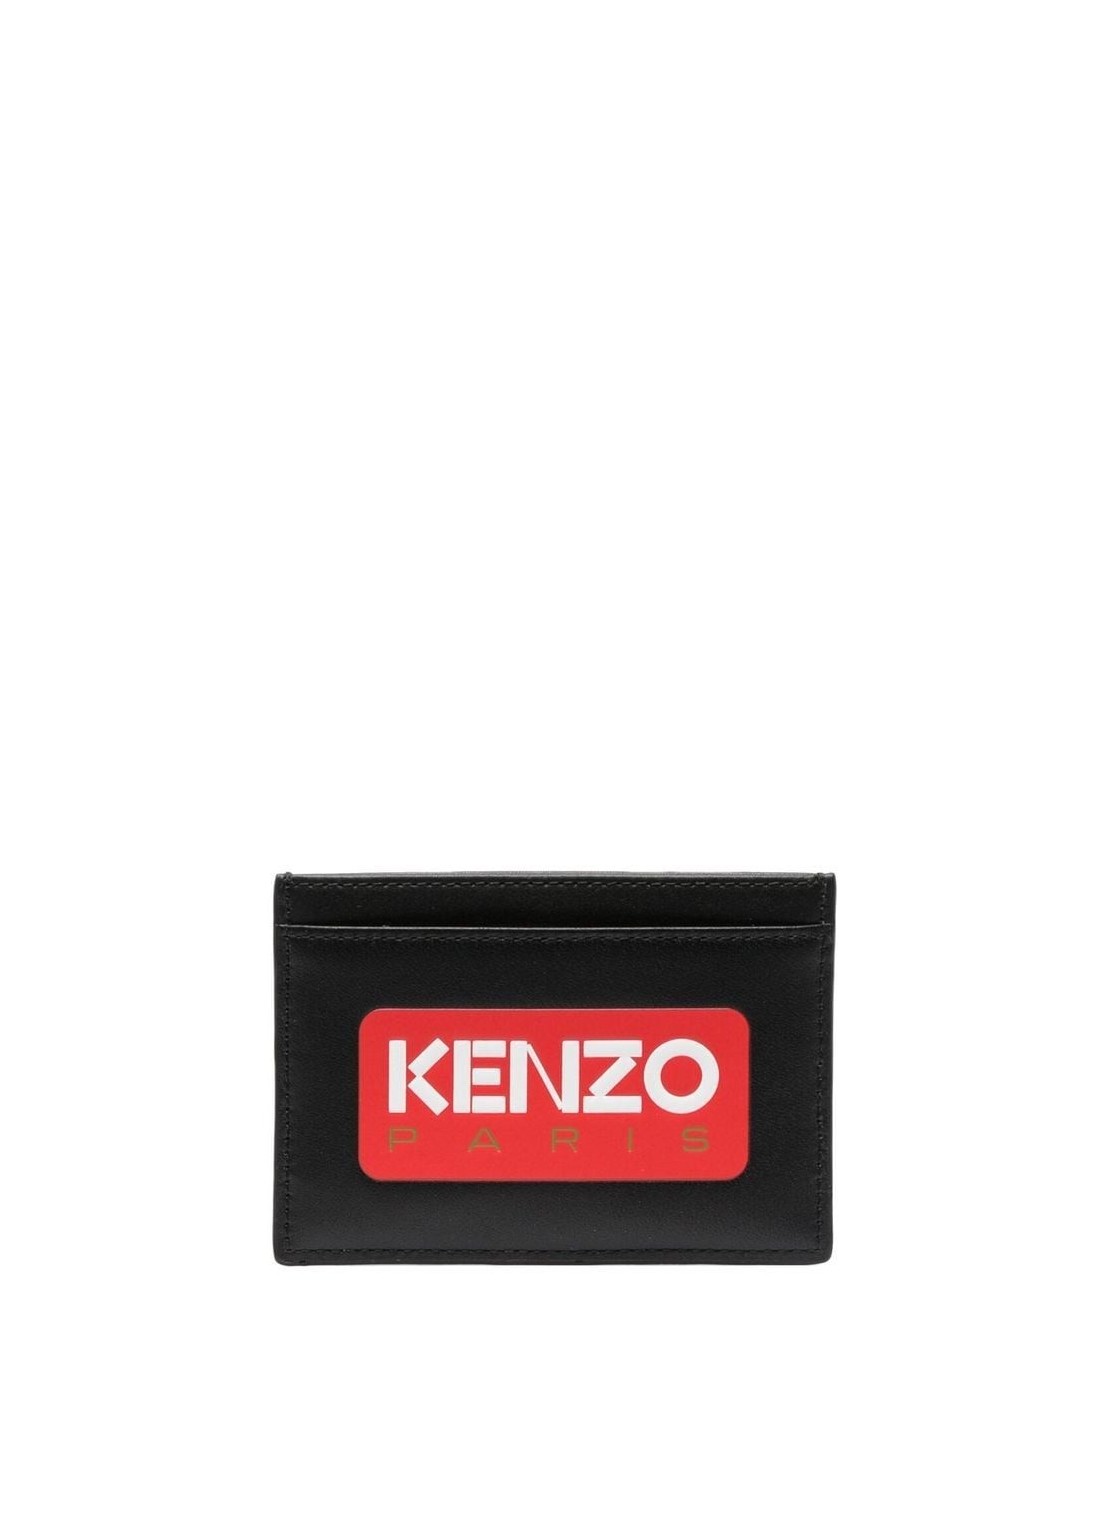 Cartera kenzo wallet man card holder fd55pm820l41 99 talla T/U
 